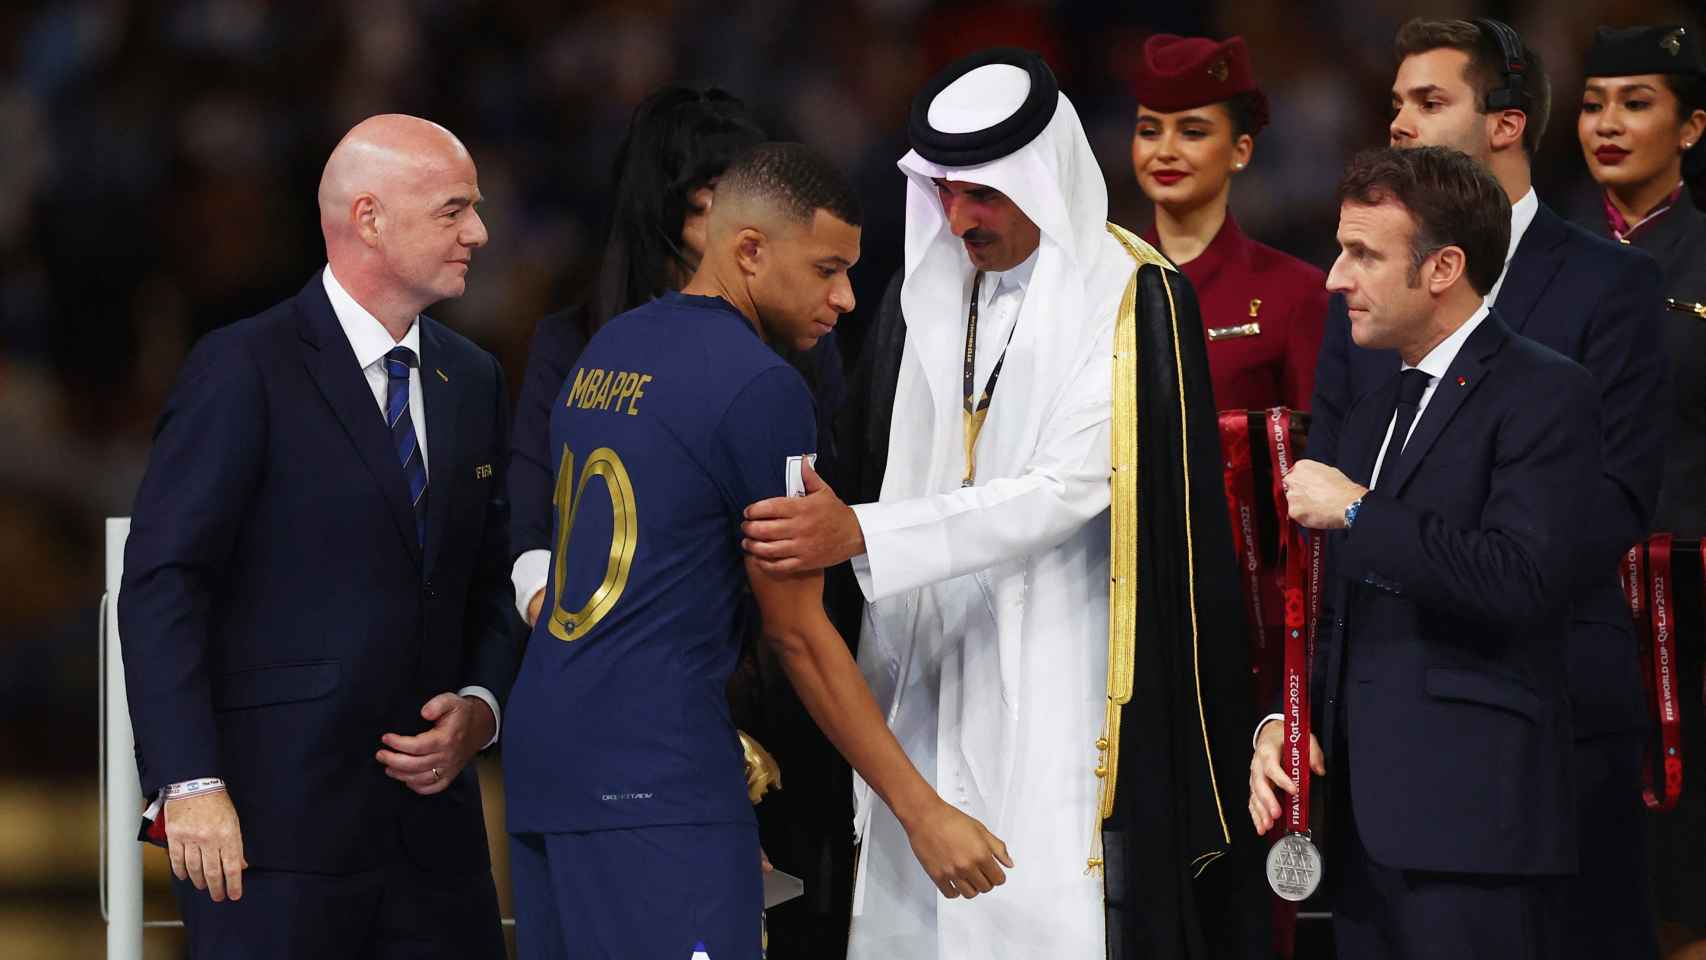 El emir de Qatar y Emmanuel Macron junto a Kylian Mbappé en la entrega de premios del Mundial